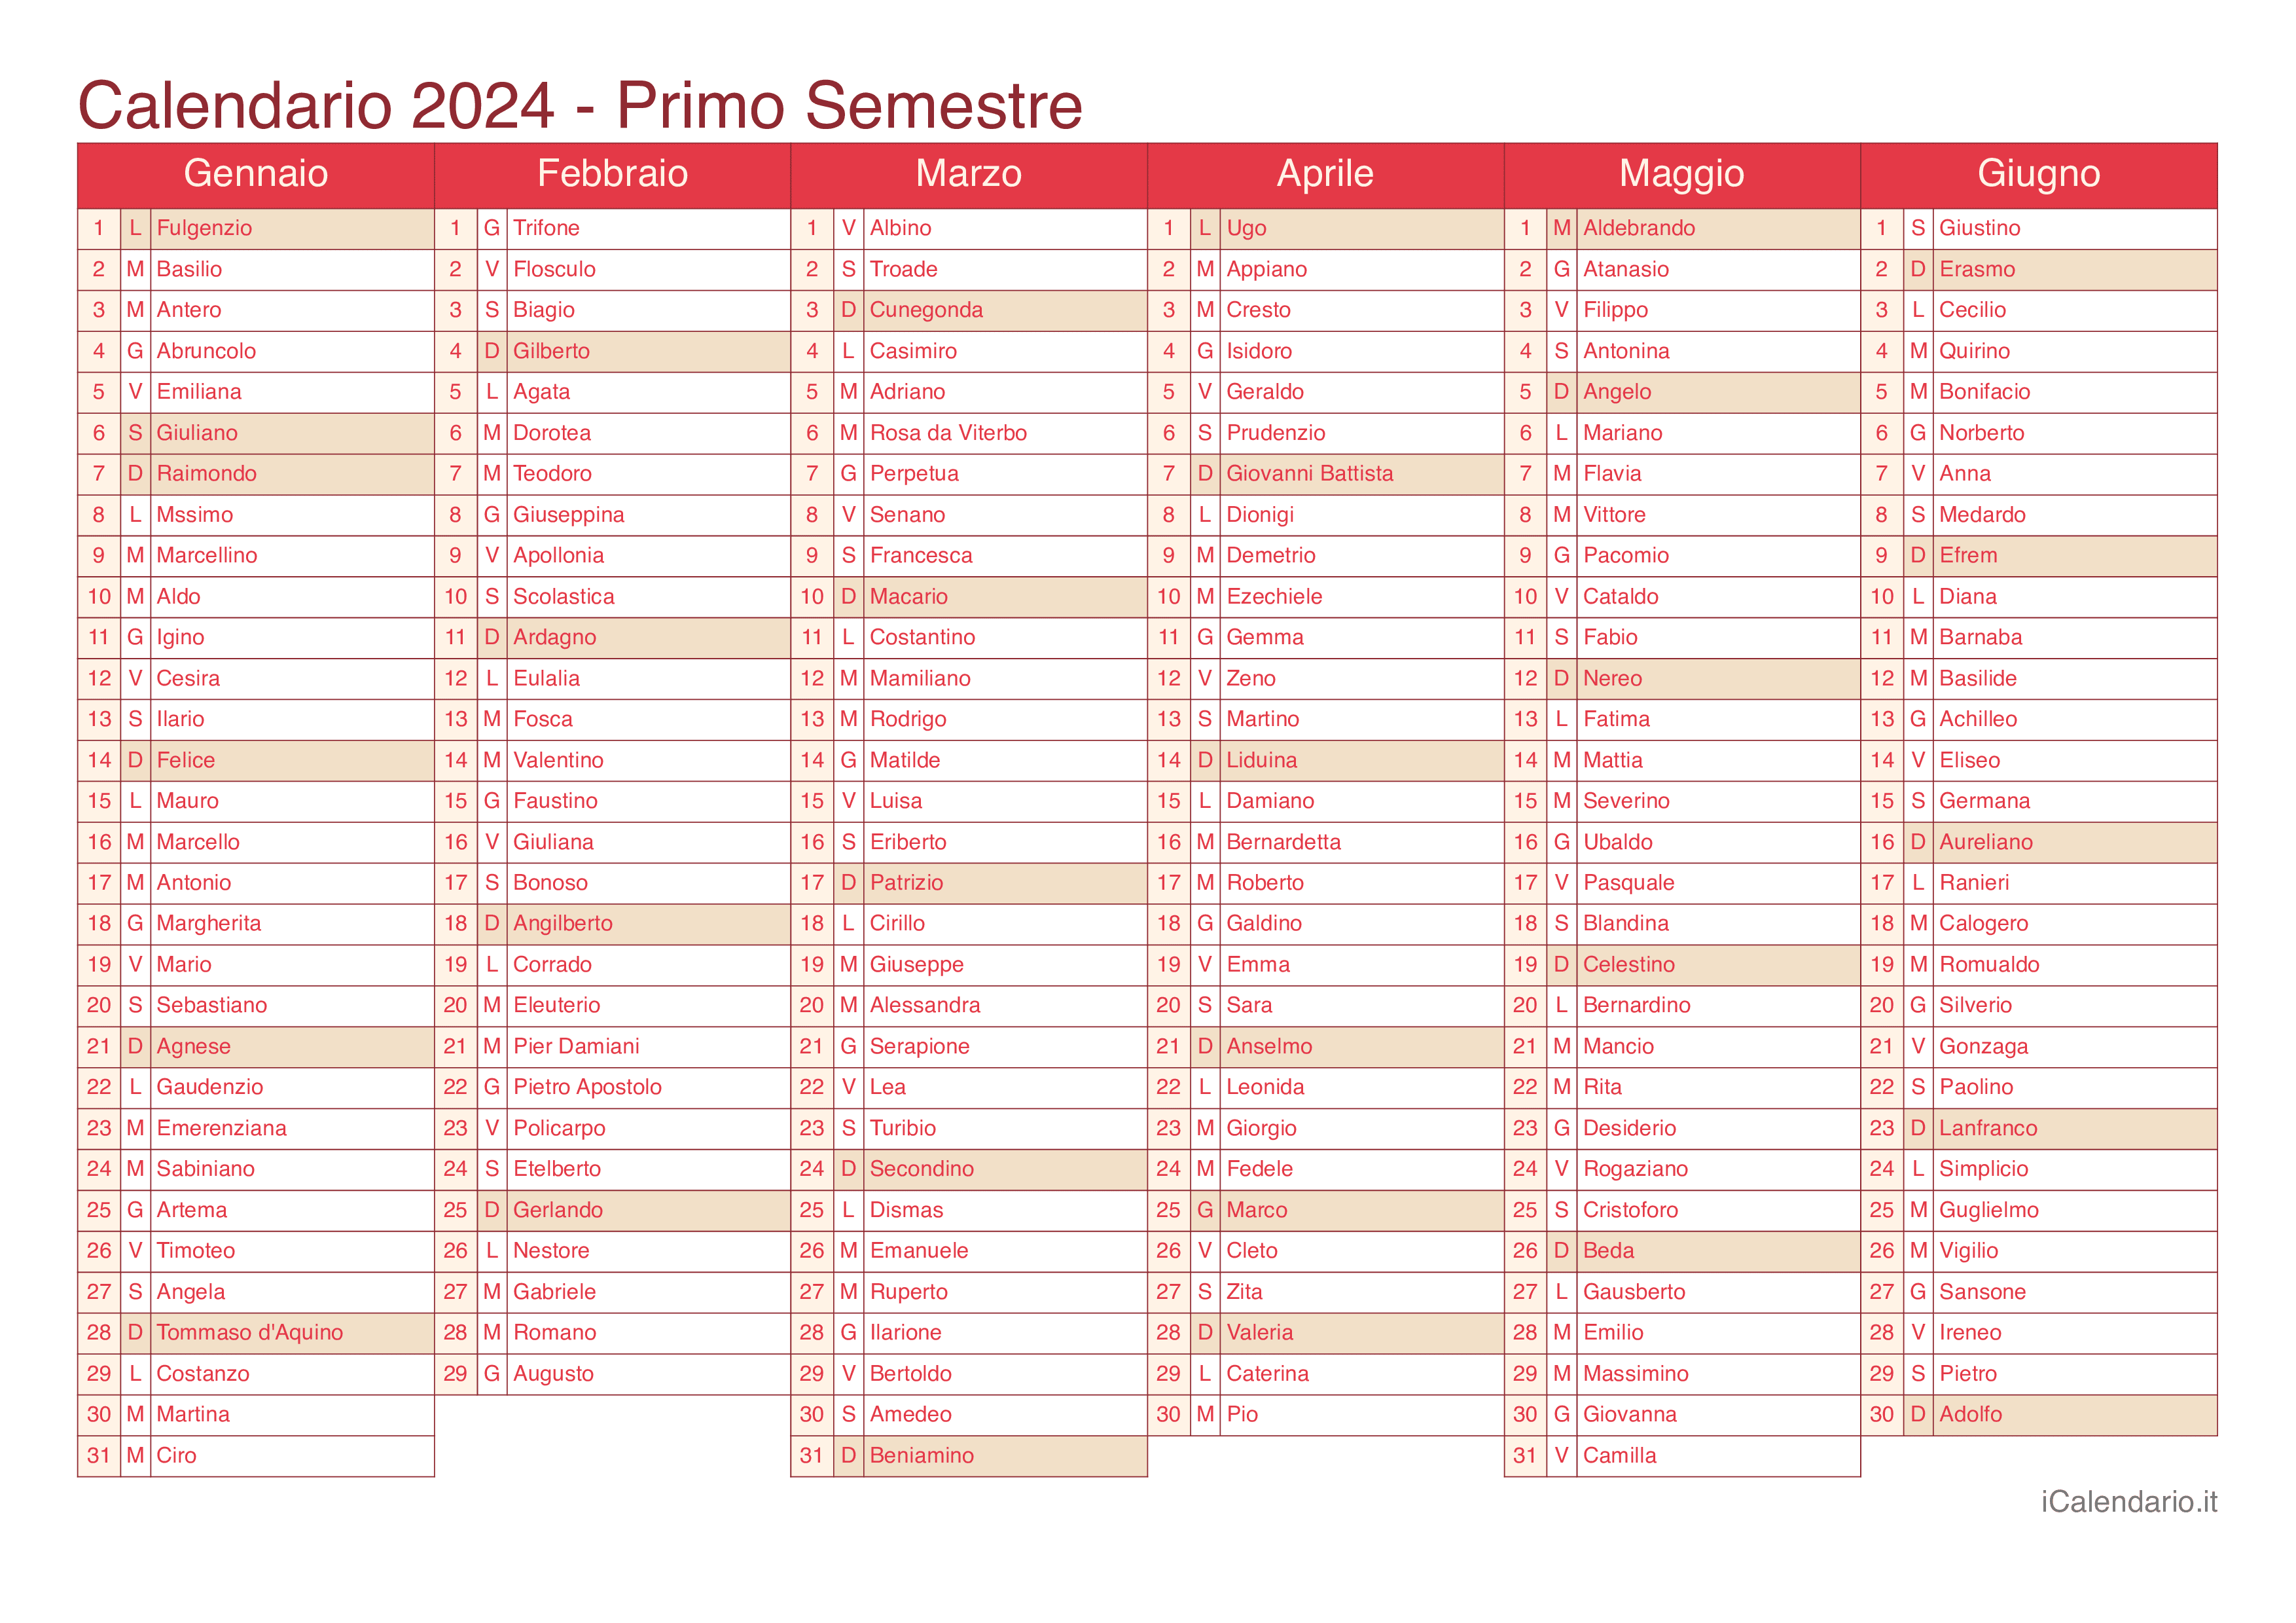 Calendario semestrale 2024 con santi e festivi - Cherry